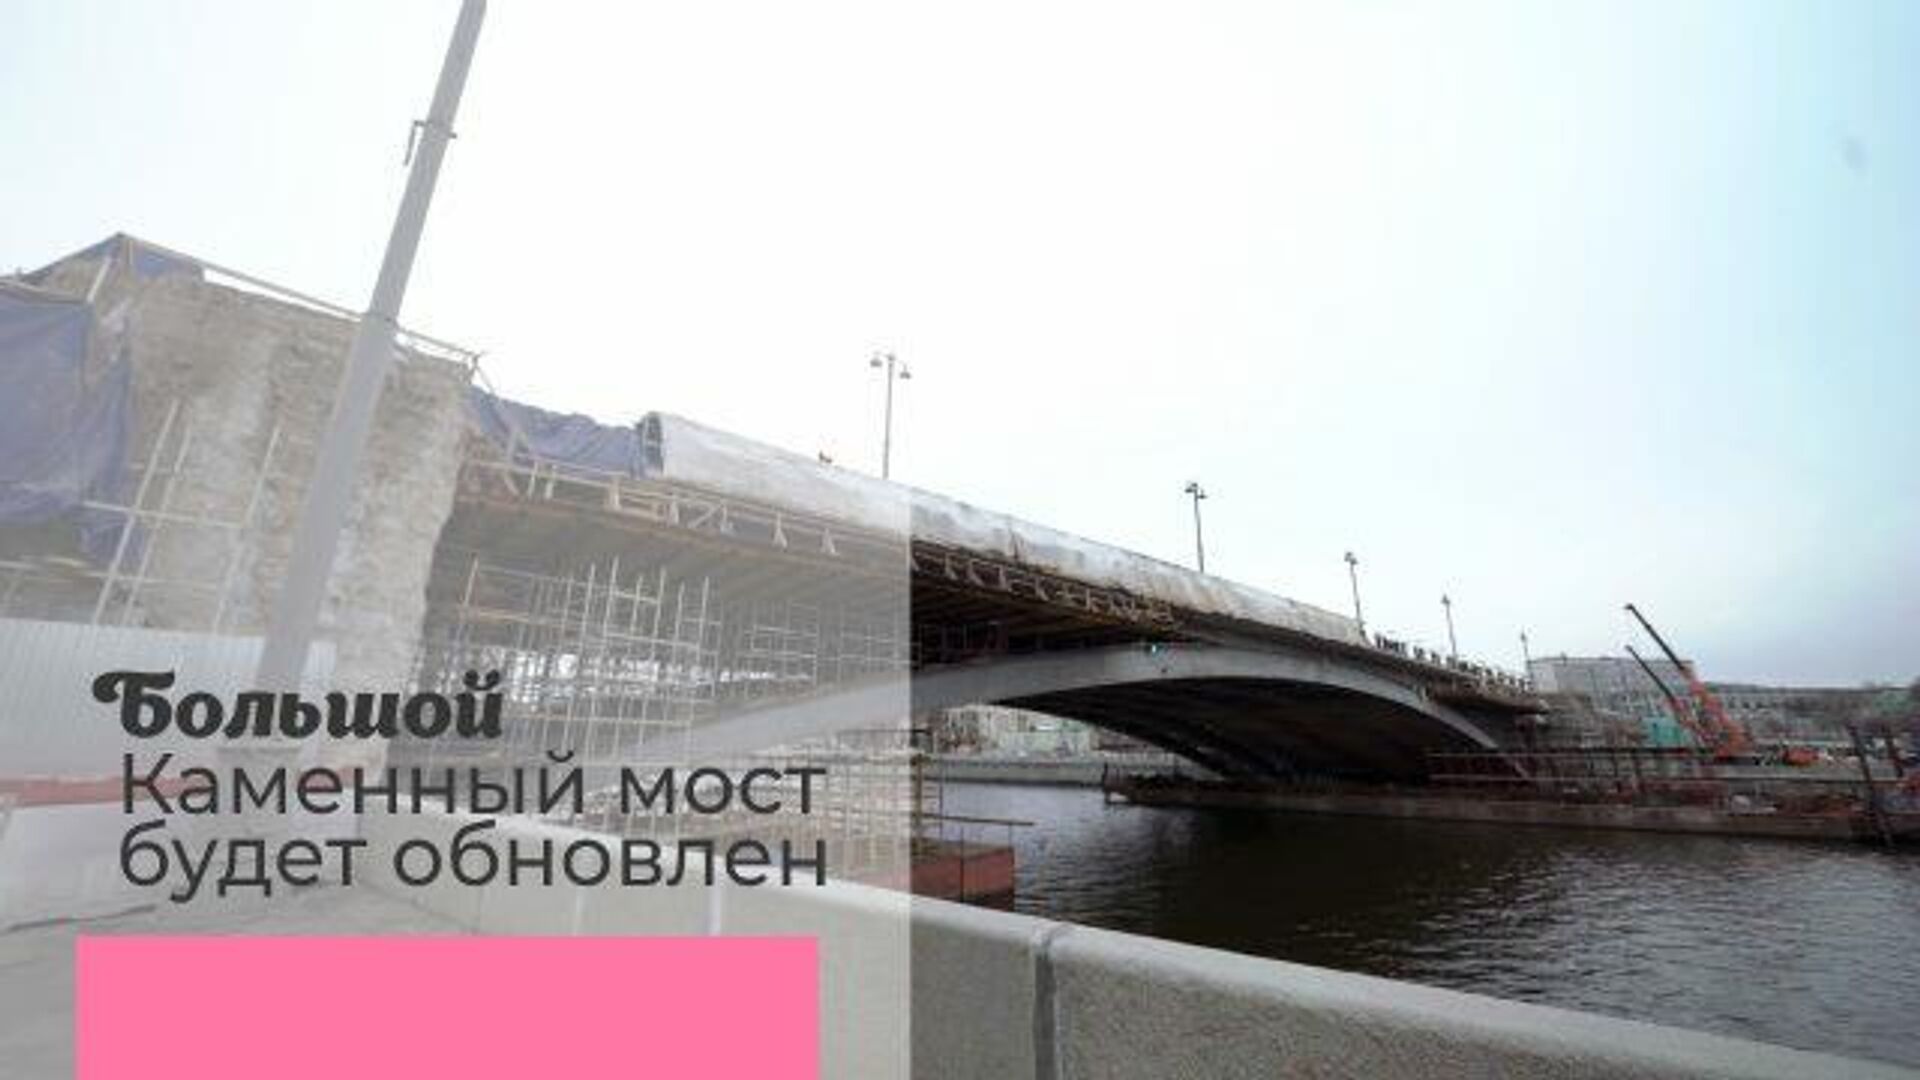 Реставрация Большого каменного моста: половина пути успешно пройдена - РИА Новости, 1920, 30.12.2020